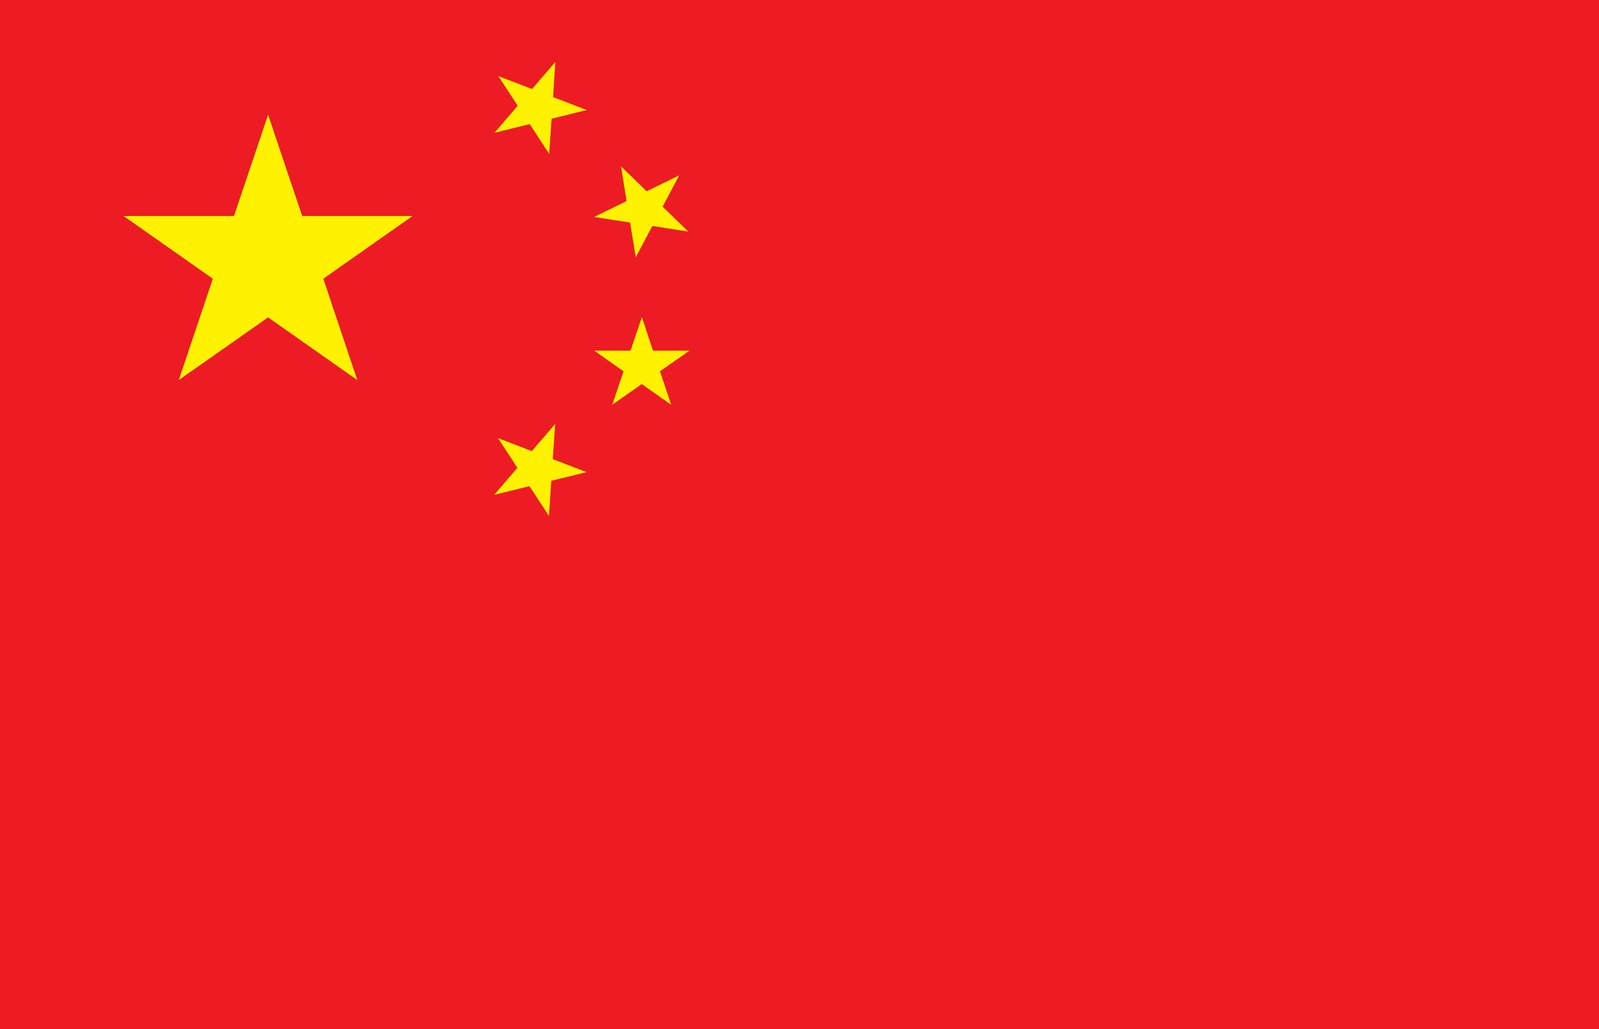 चीन का झंडा मुफ्त फोटो डाउनलोड | निःशुल्क छवियाँ